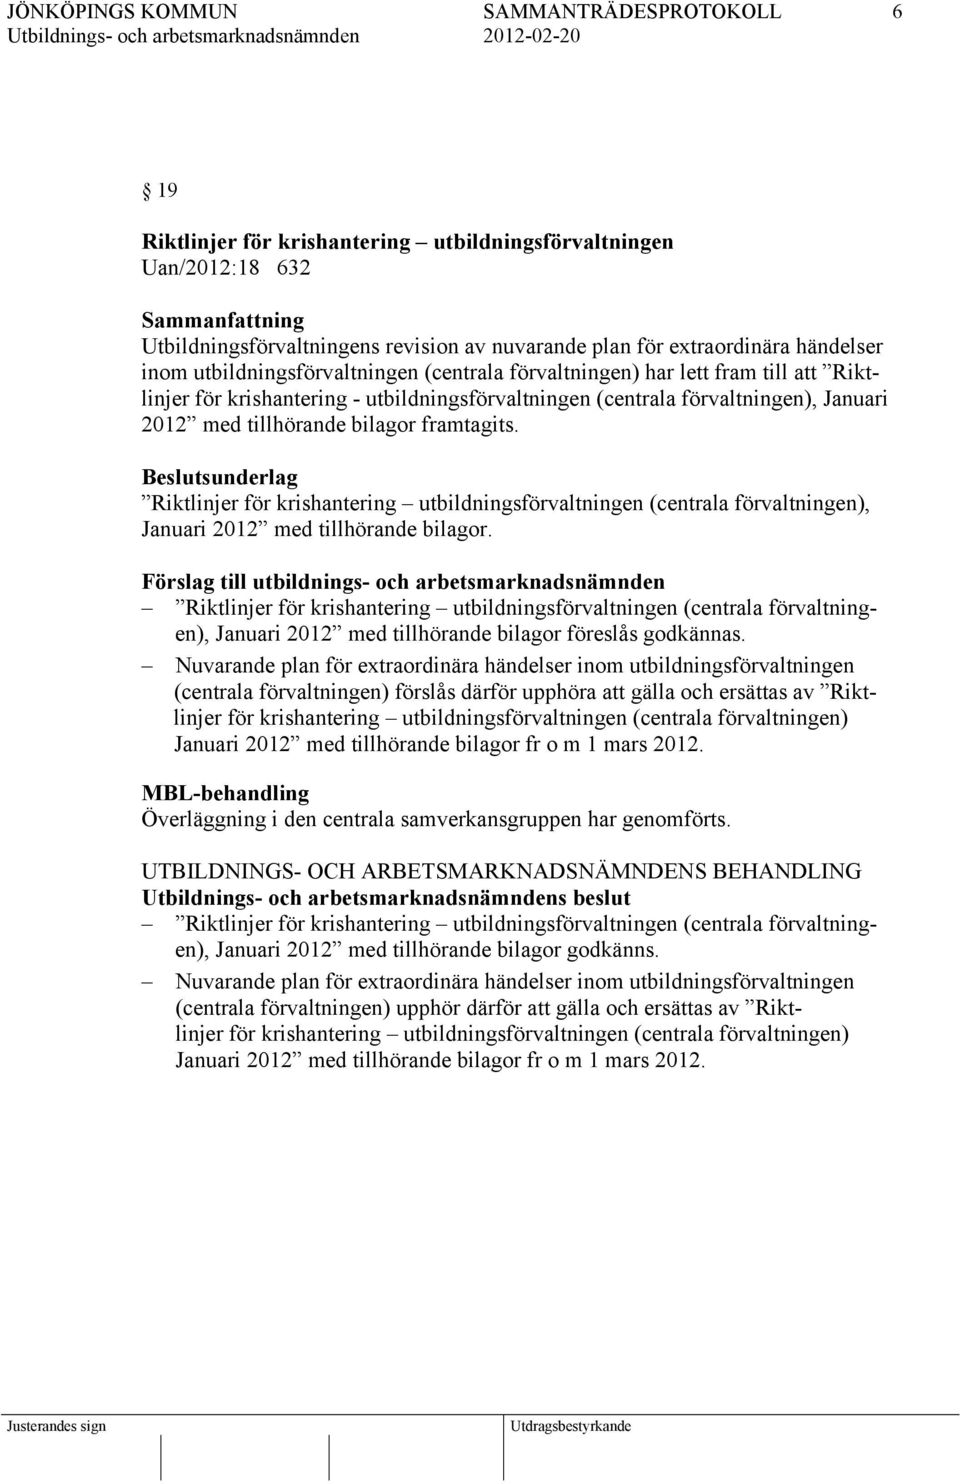 Riktlinjer för krishantering utbildningsförvaltningen (centrala förvaltningen), Januari 2012 med tillhörande bilagor.